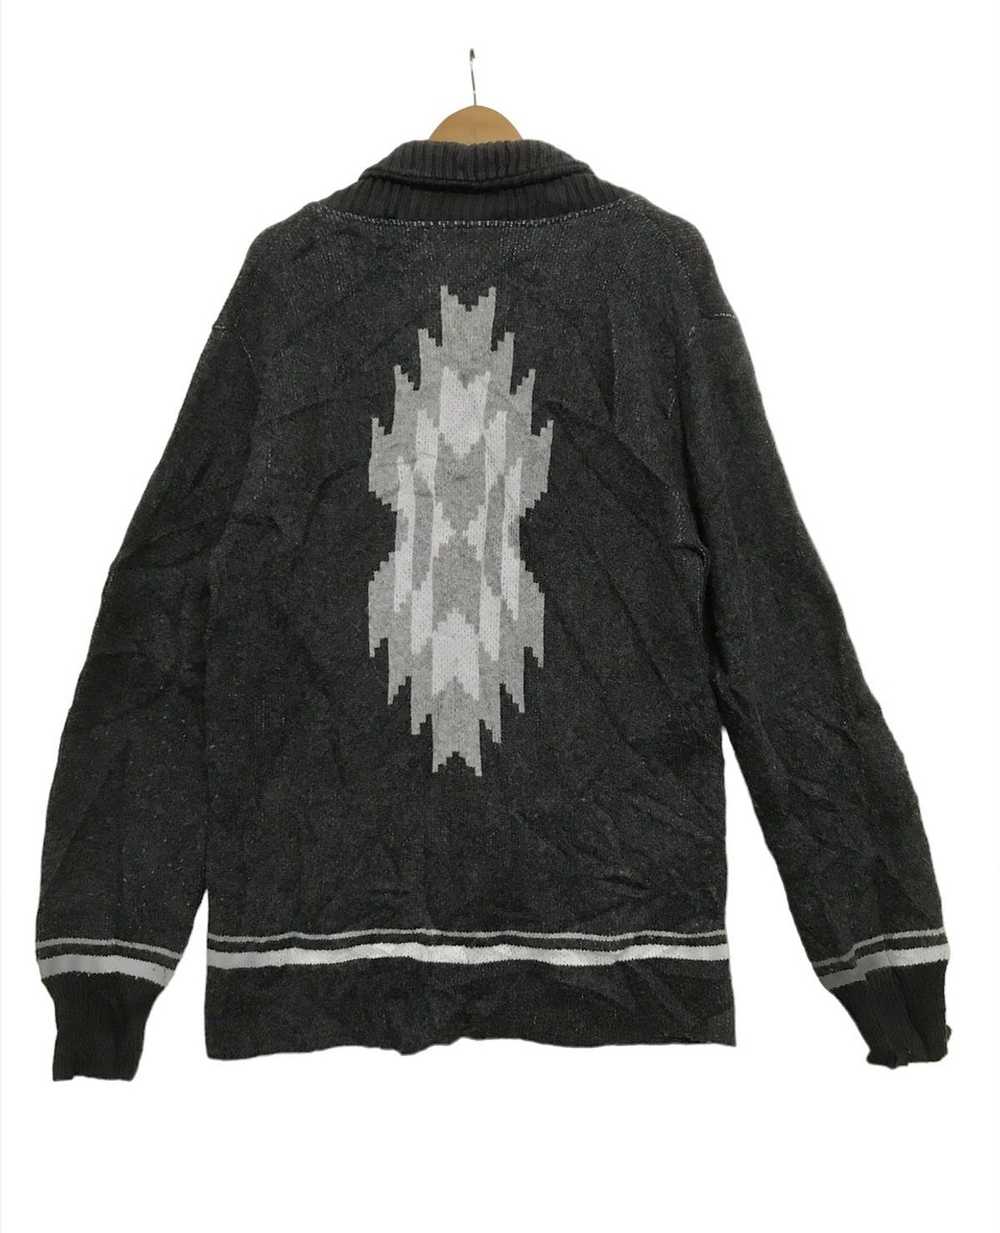 Japanese Brand Unisex Cardigan Sweater Native Chi… - image 2